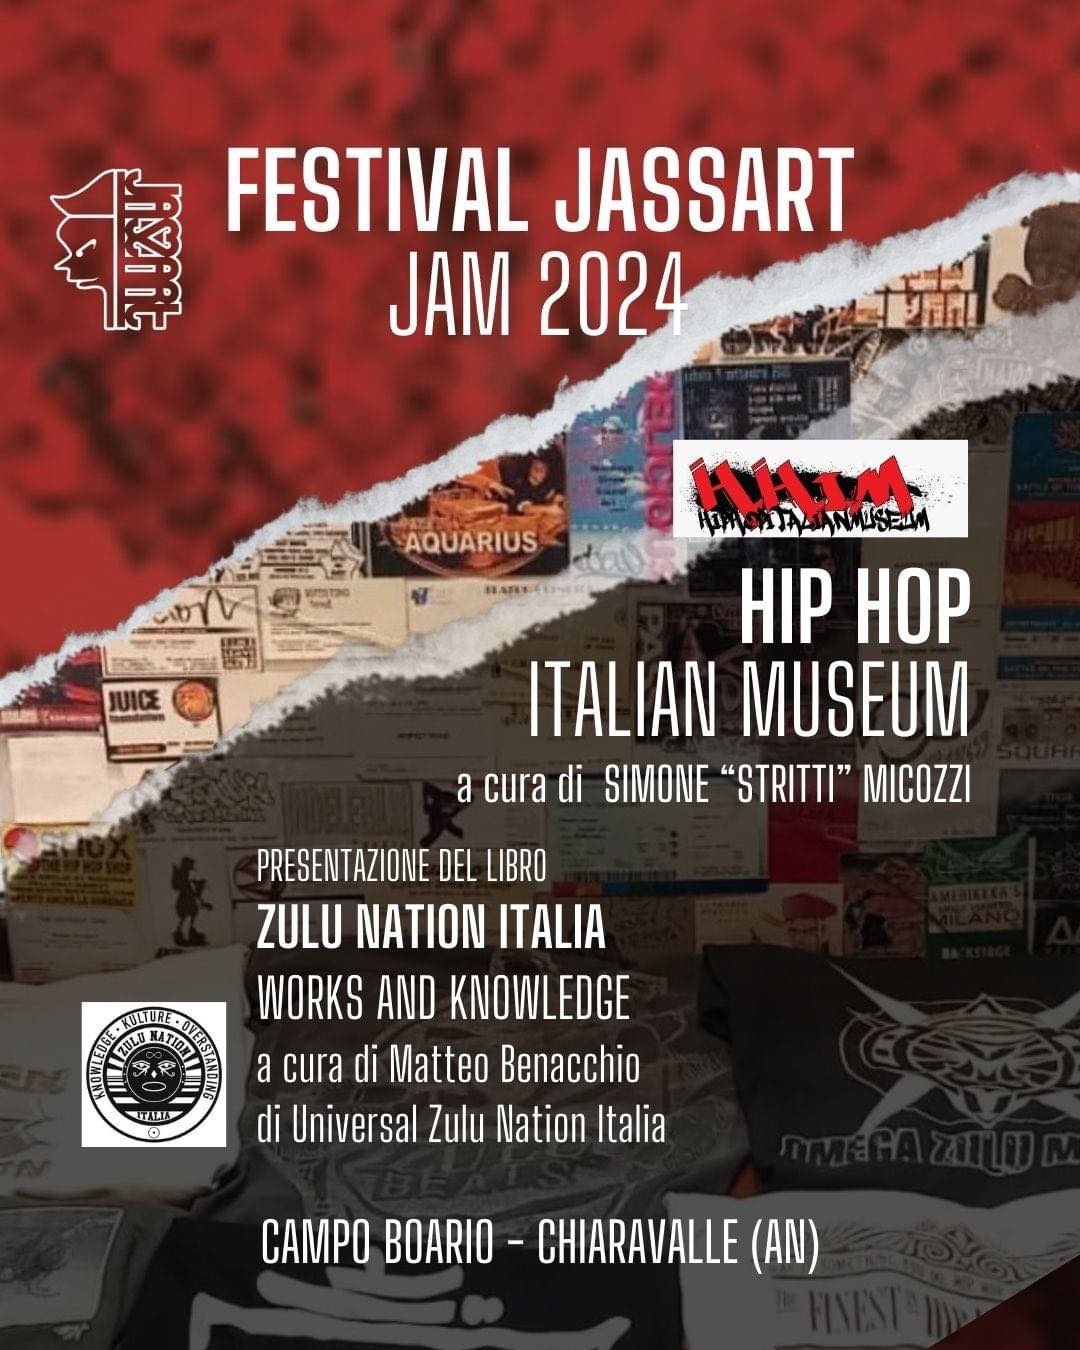 Presentazione: 30 giugno "Zulu Nation Italia Works & Knowledge" al Jassart 2024, Chiaravalle (AN)